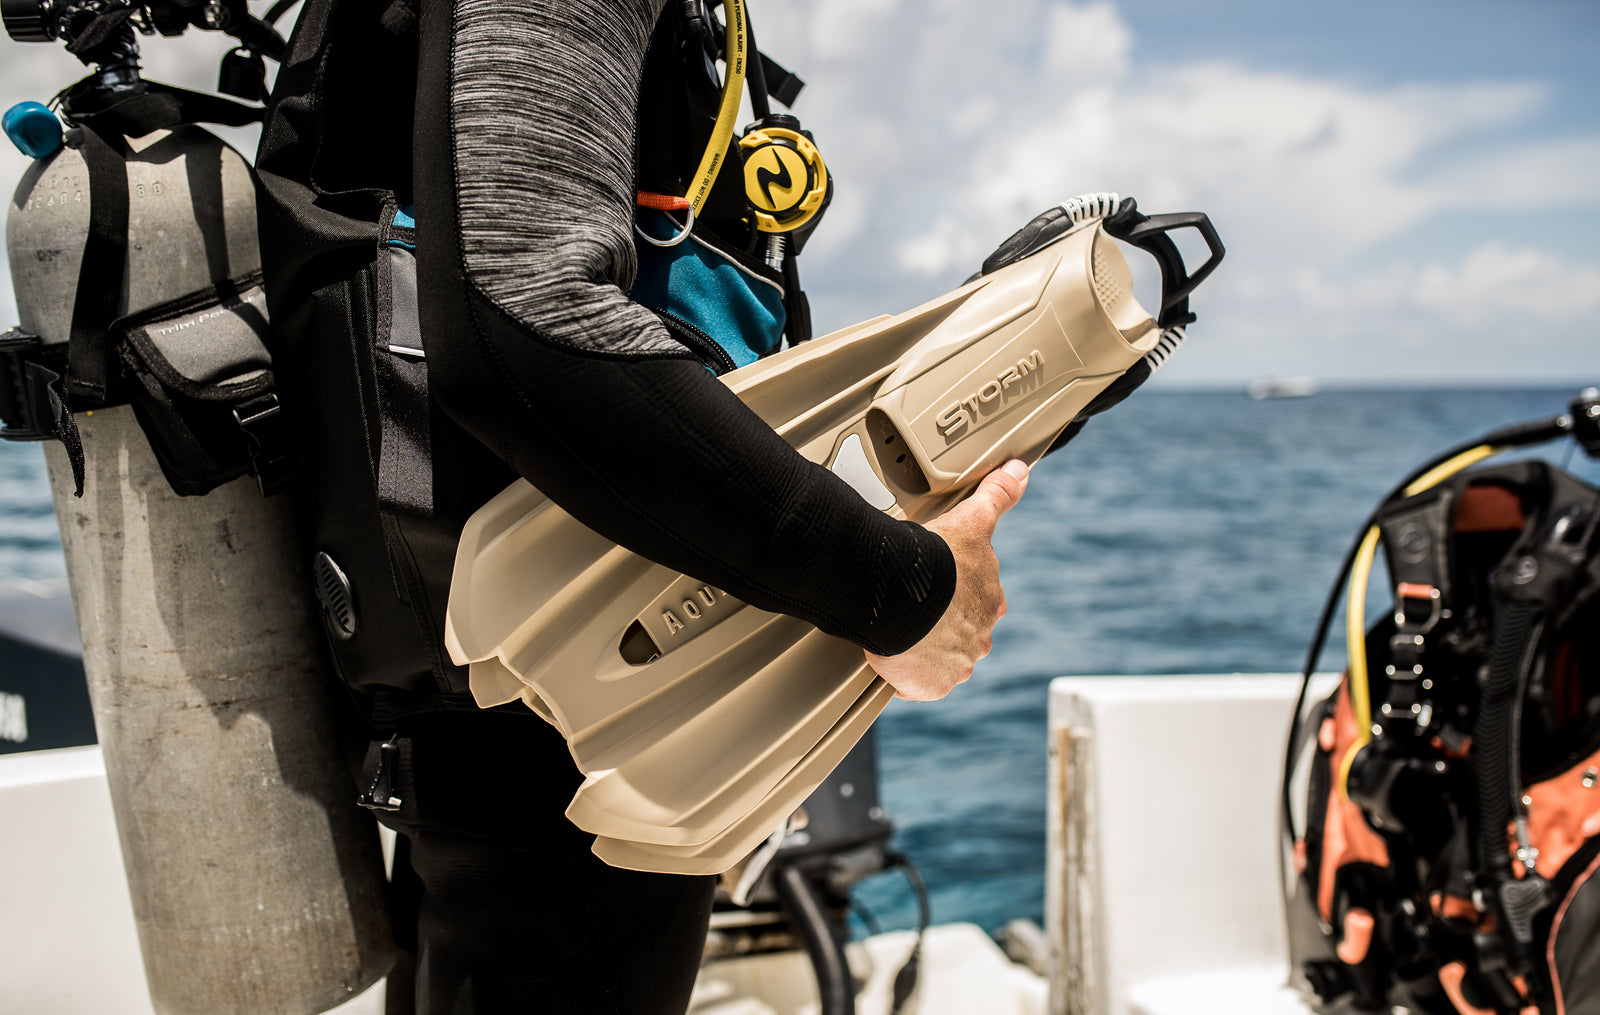 En nybegynner guide til komplett dykkerutstyr